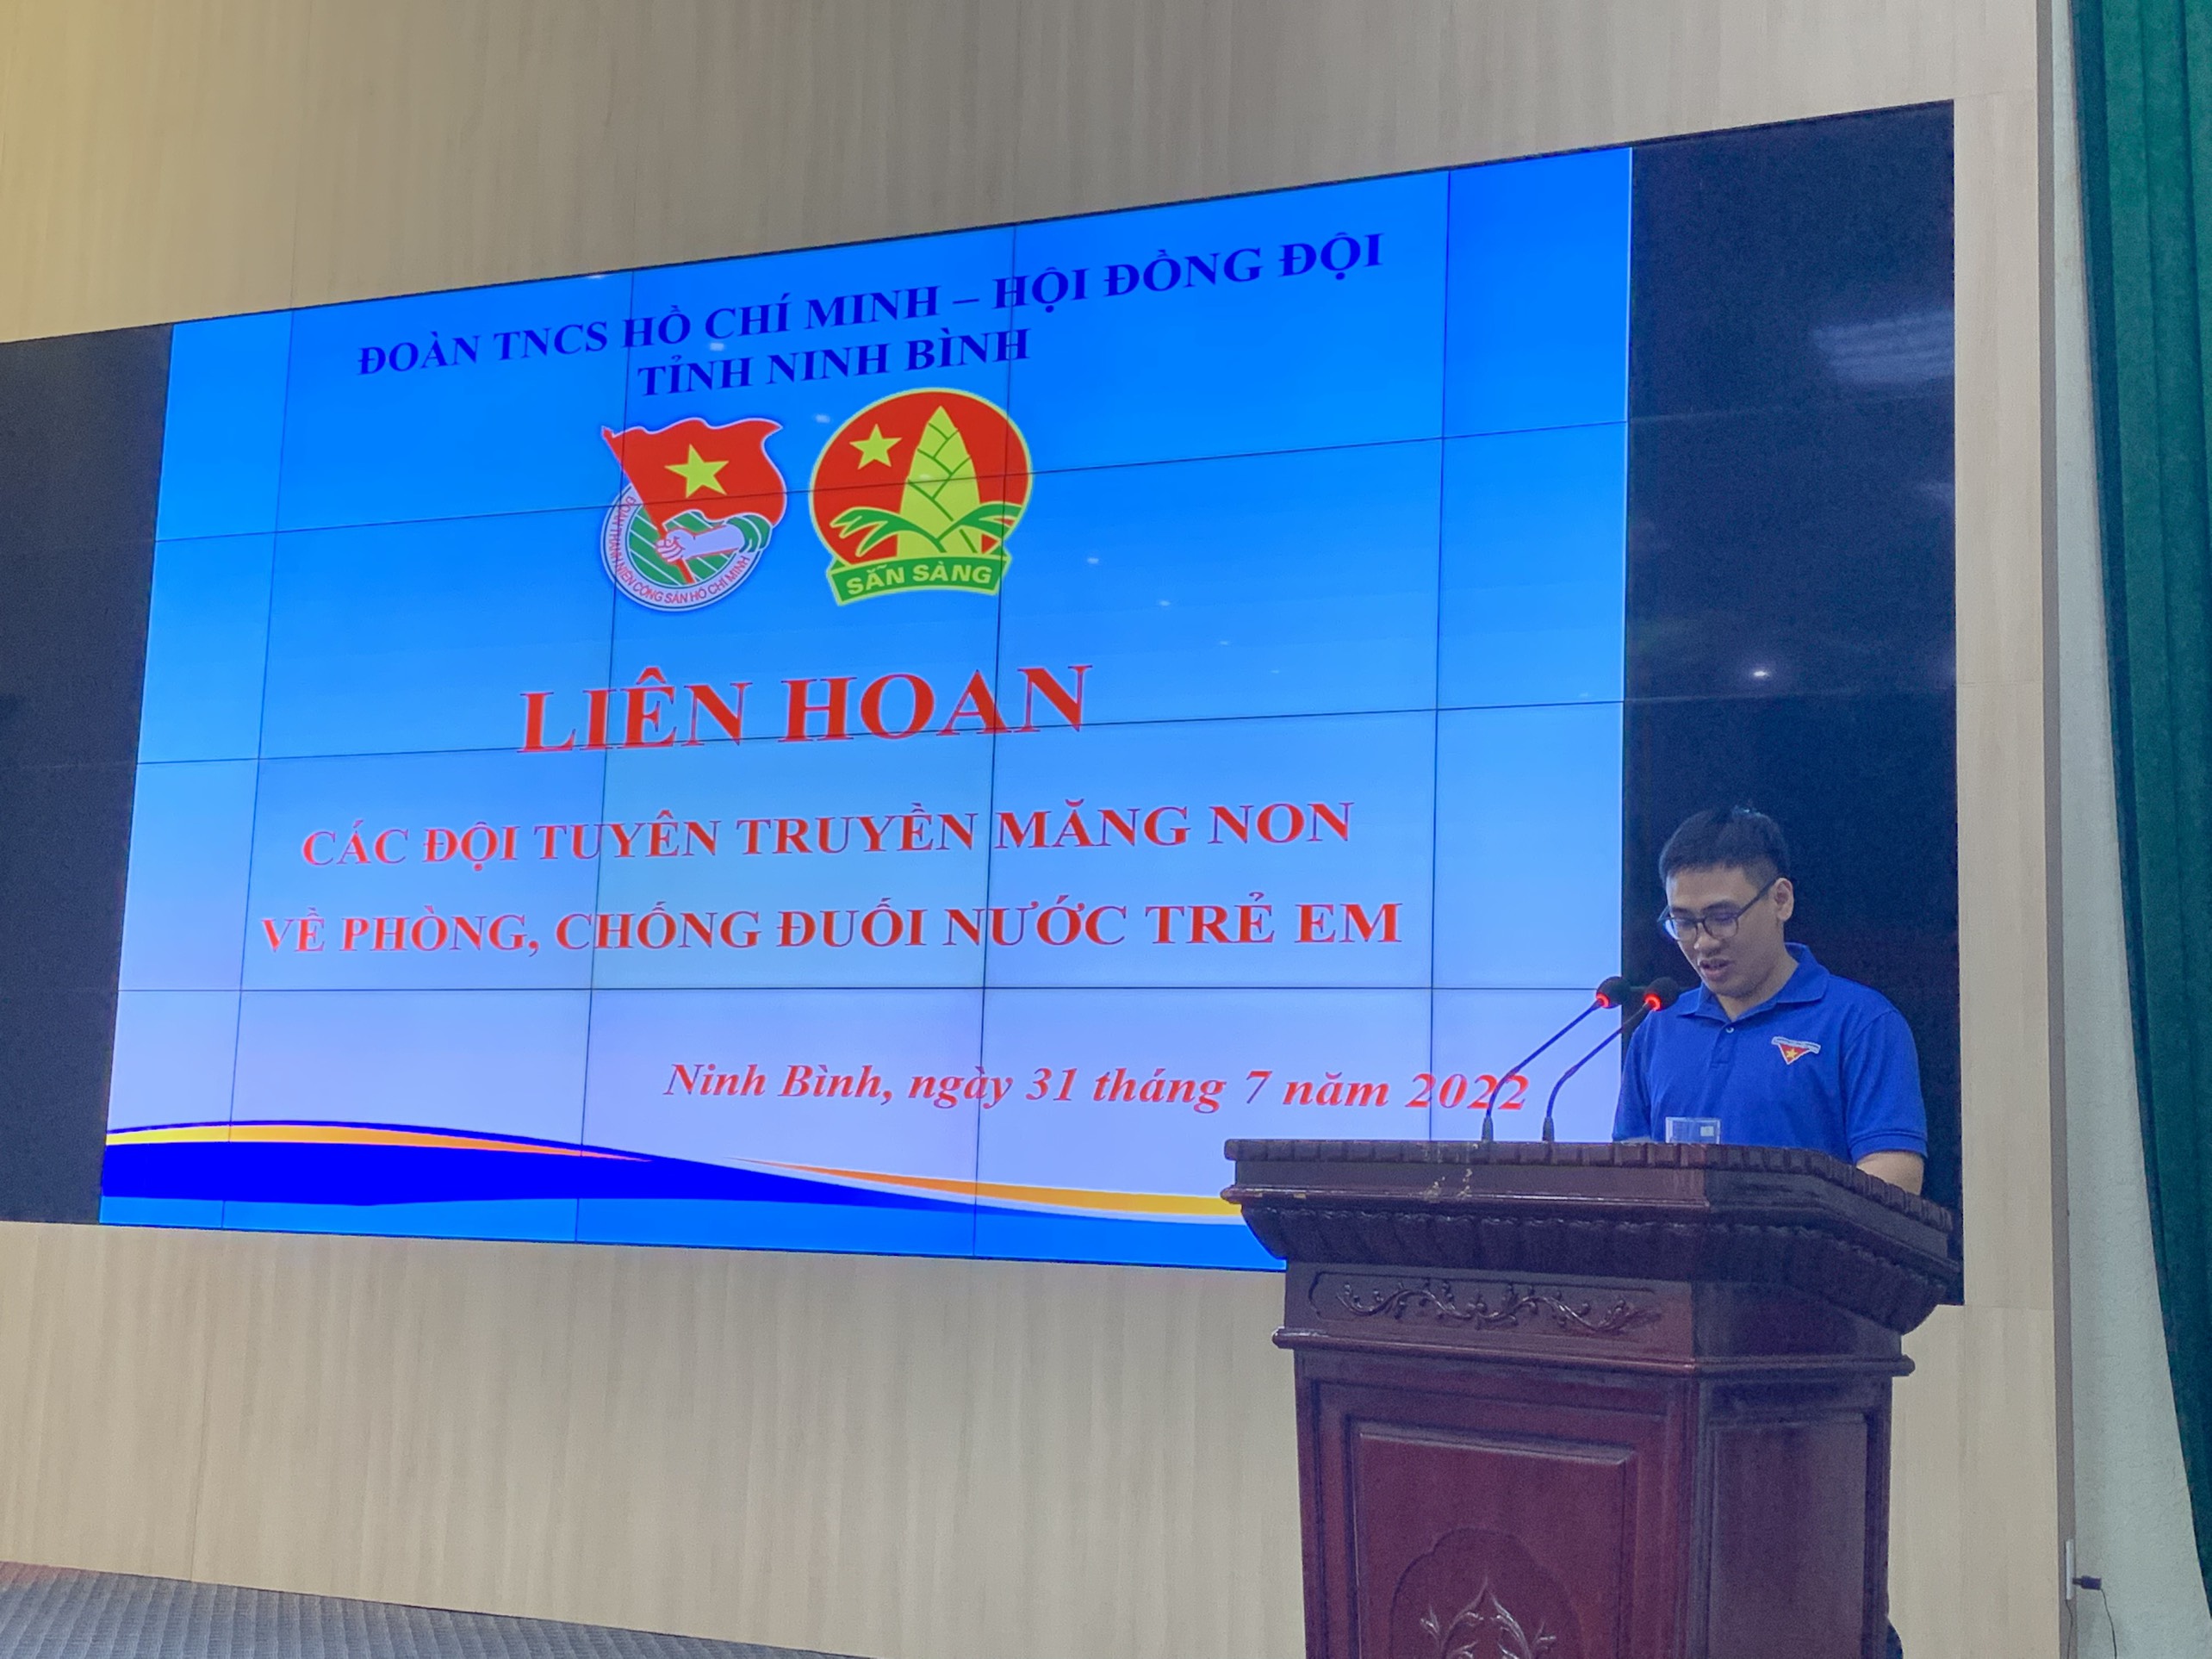 Liên hoan các đội tuyên truyền măng non về phòng, chống đuối nước tỉnh Ninh Bình năm 2022